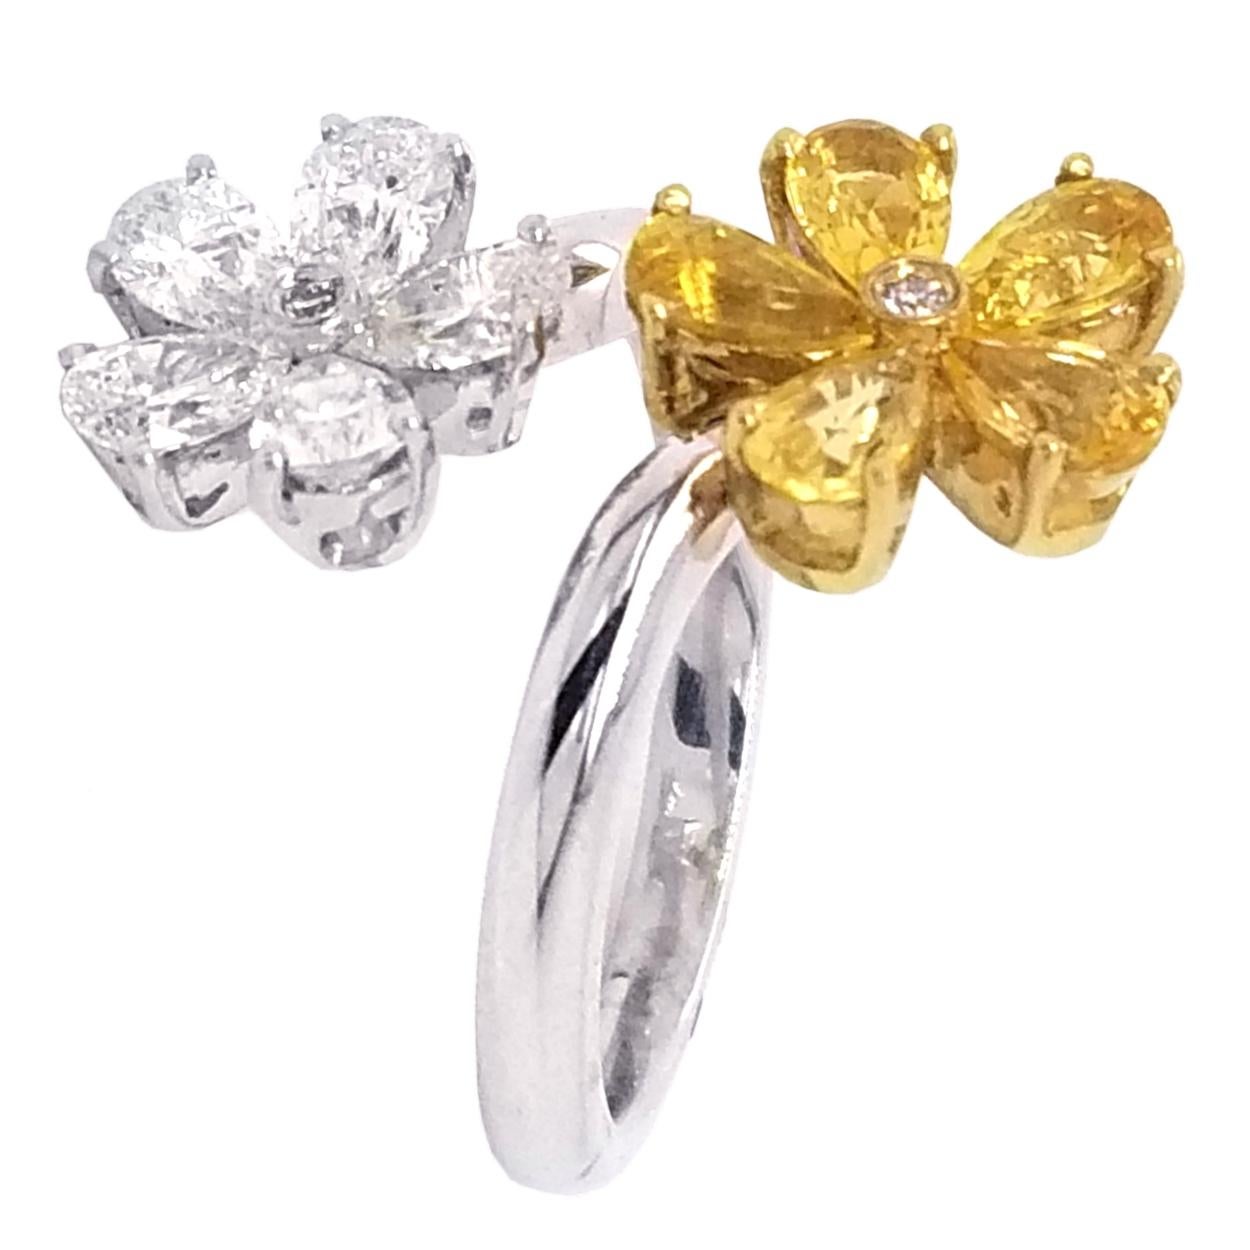 Deux fleurs composaient 5  Des diamants en forme de poire et 5 saphirs jaunes en forme de poire avec un centre rond brillant pour chacun d'entre eux créent cette magnifique bague amusante en or 18K.
Pierres :
Diamants : 5 en forme de poire et 2